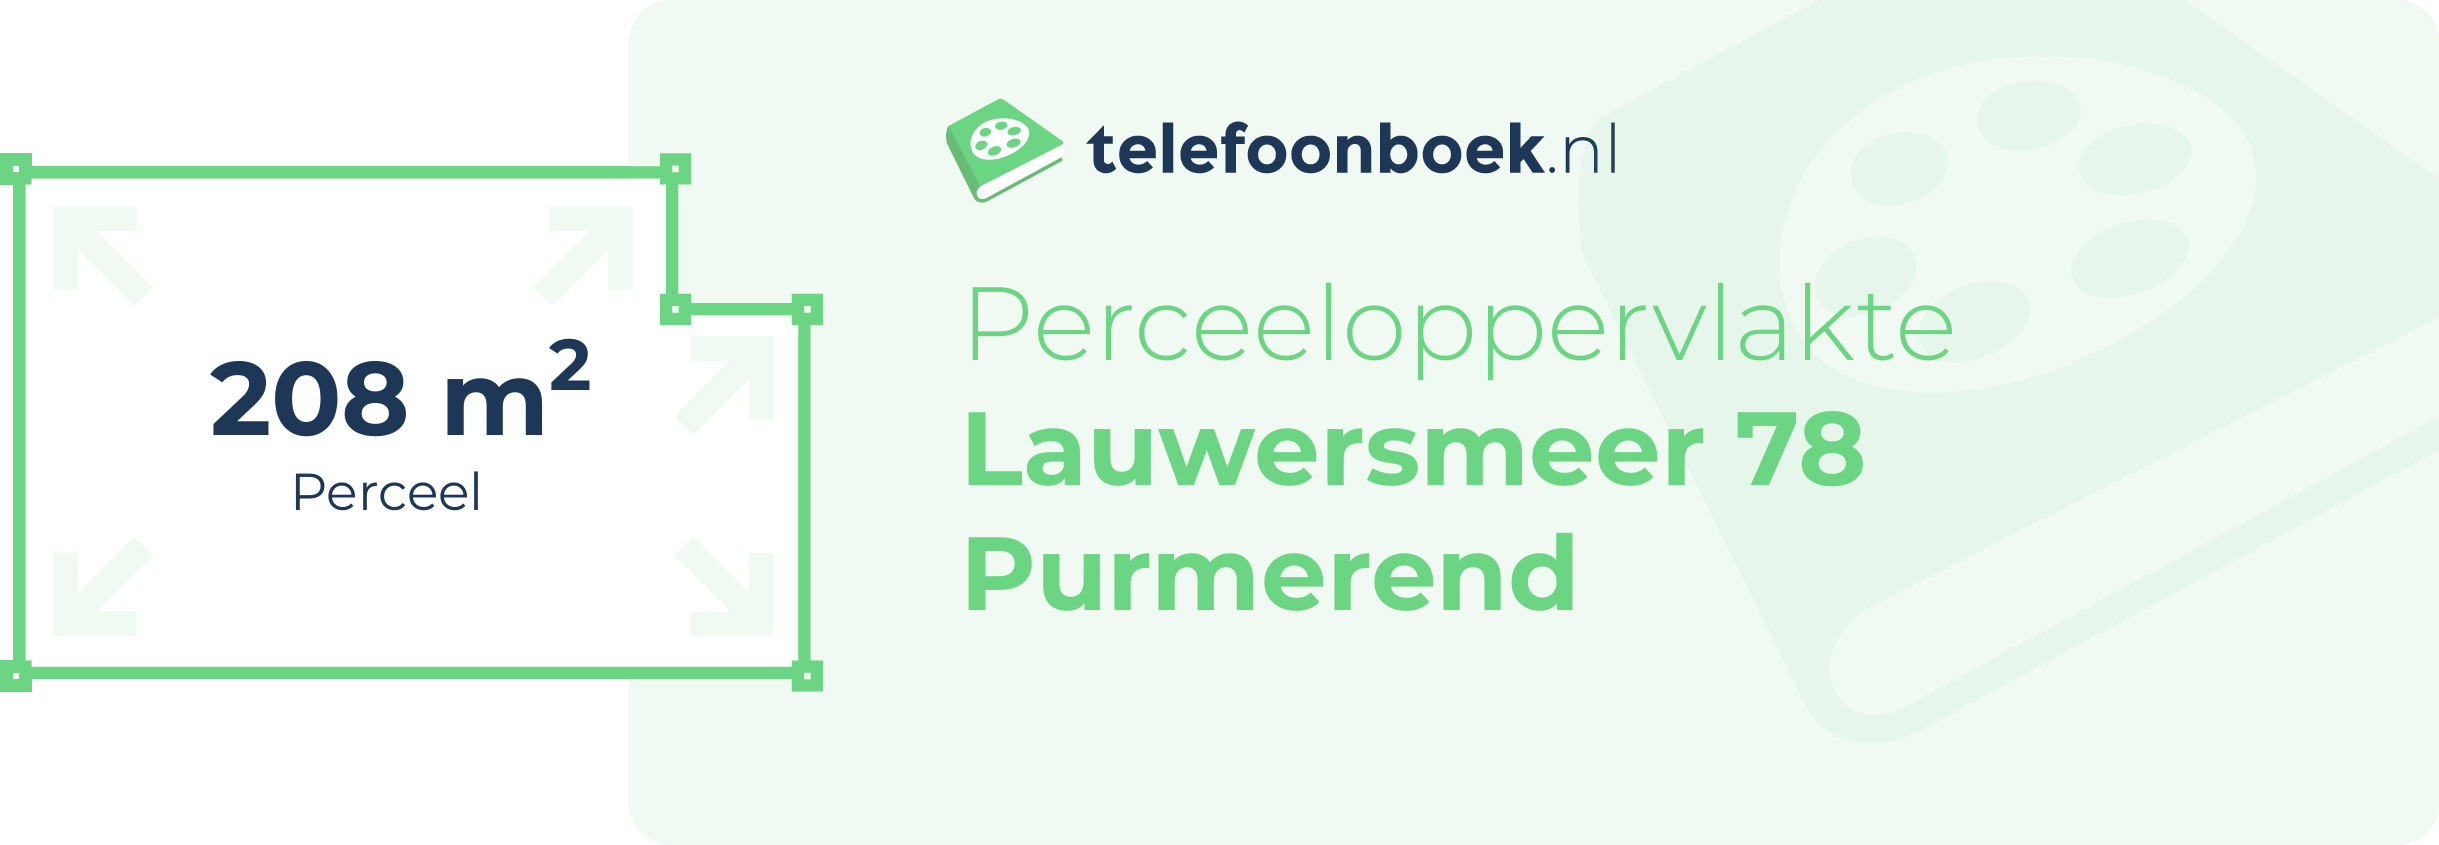 Perceeloppervlakte Lauwersmeer 78 Purmerend